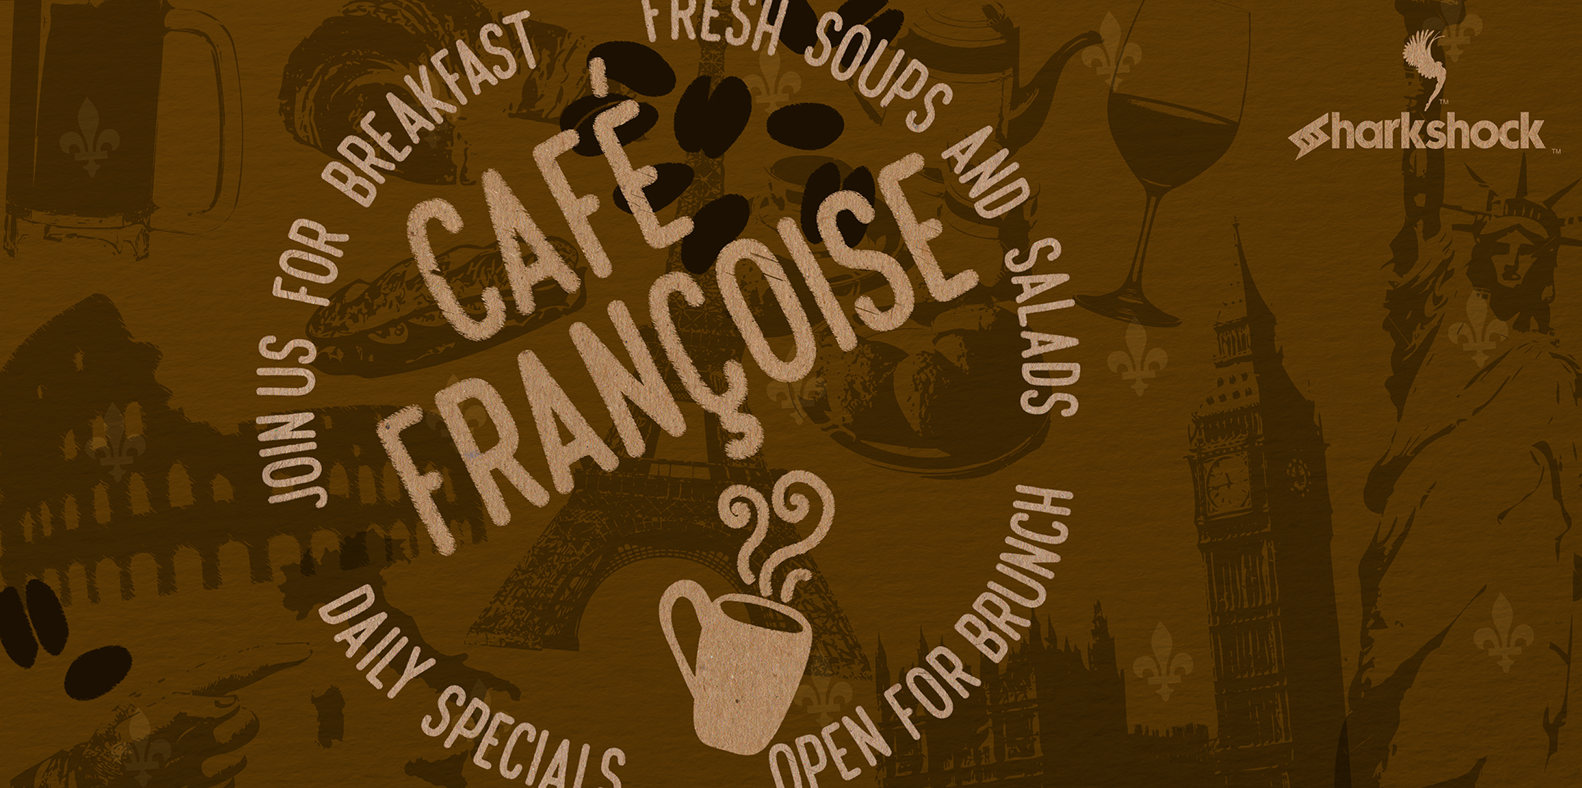 Cafe Francoise